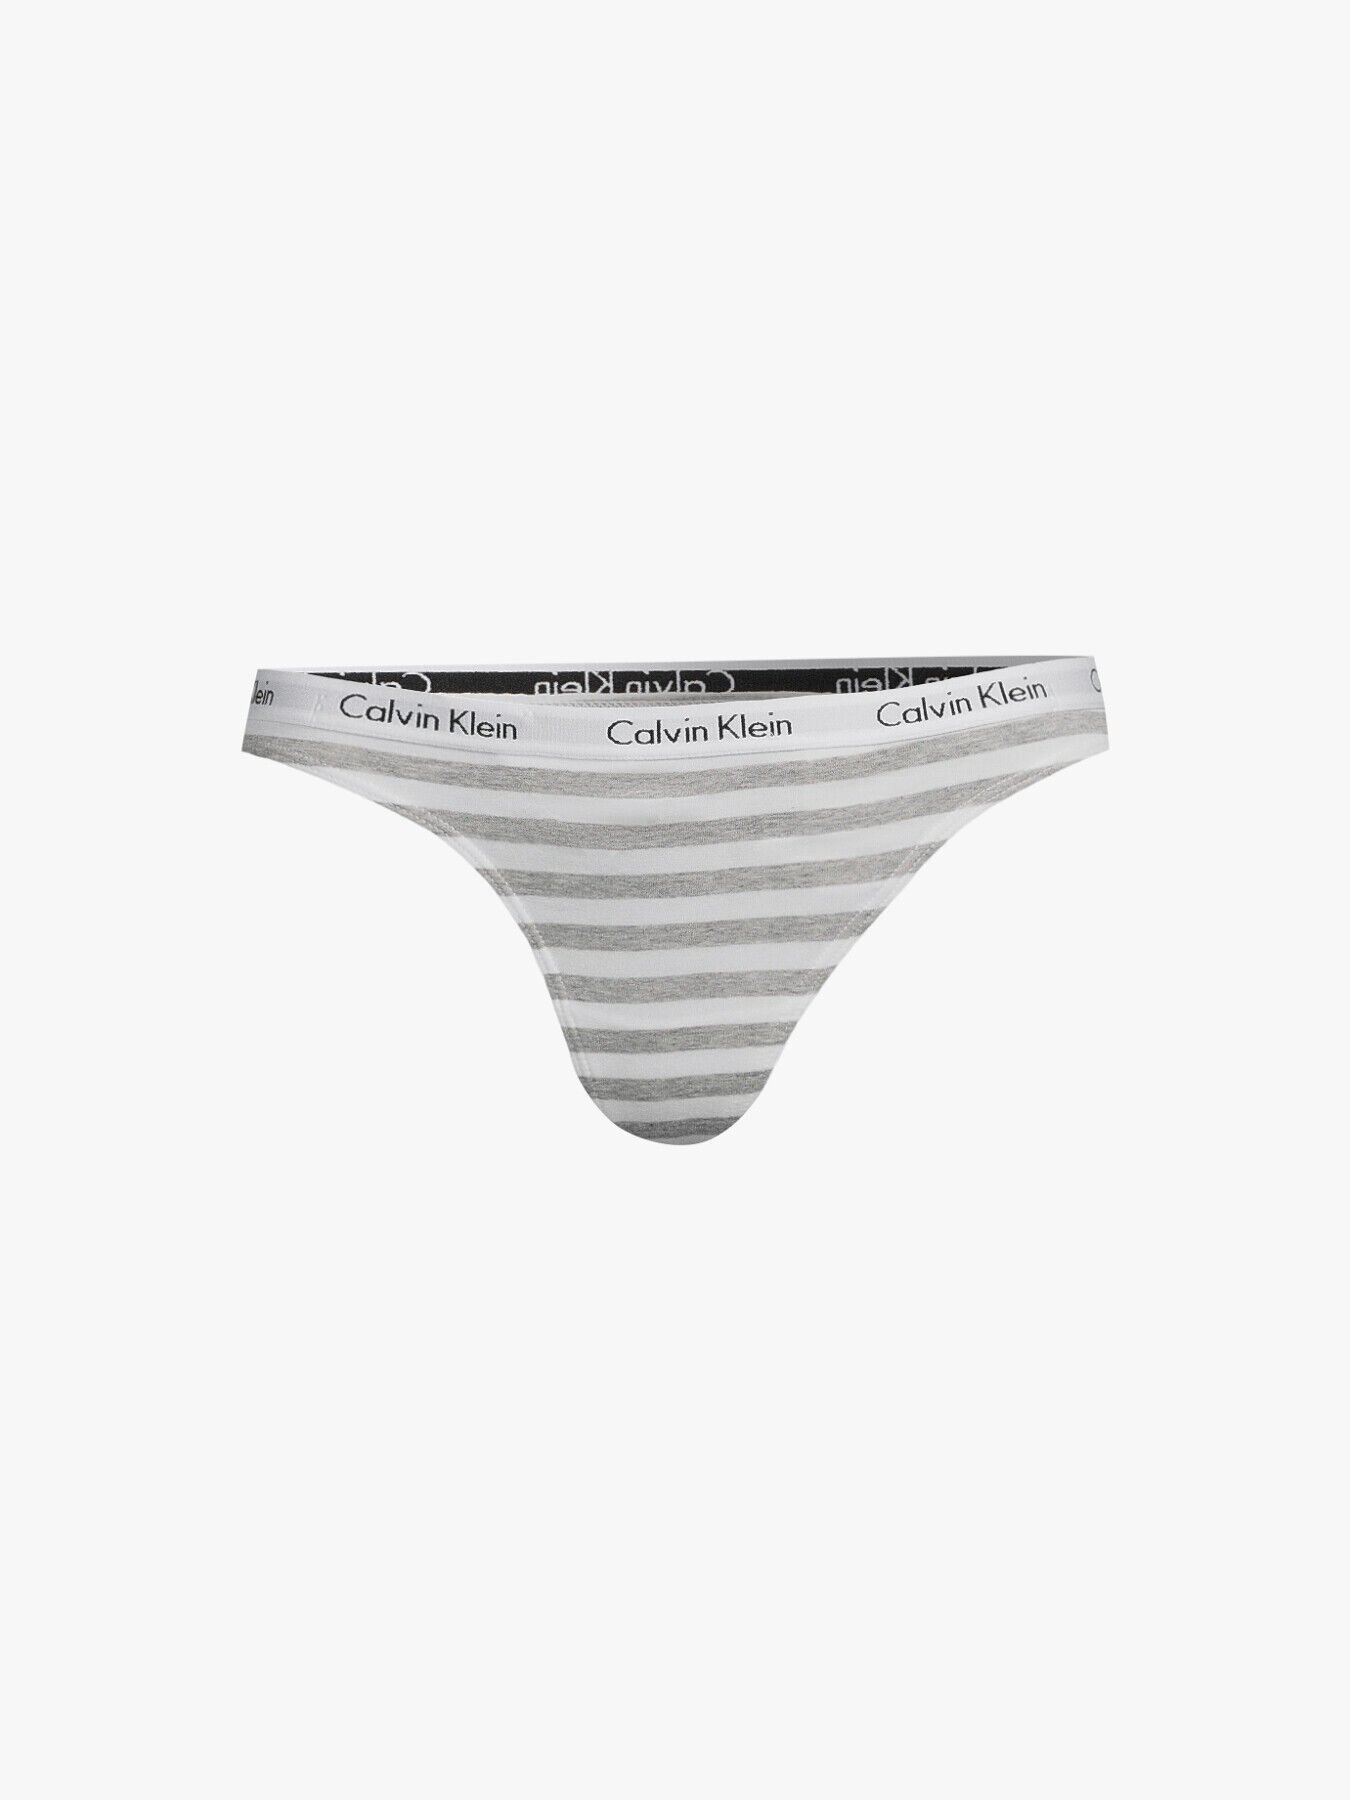 Calvin Klein Carousel Thong In Feeder Stripe Deep Searose - FREE